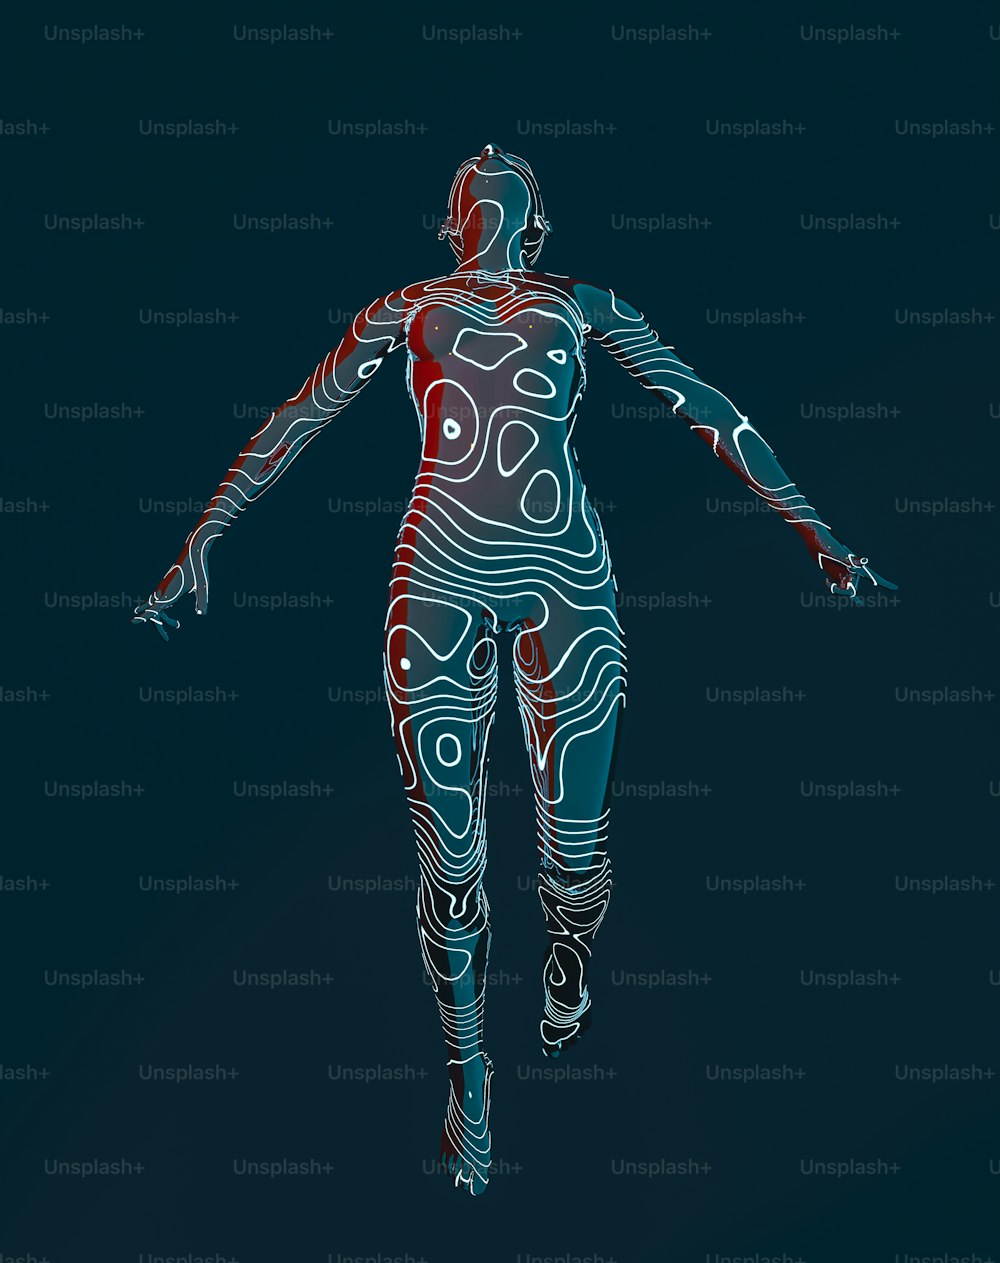 Un'immagine stilizzata di una donna in un body